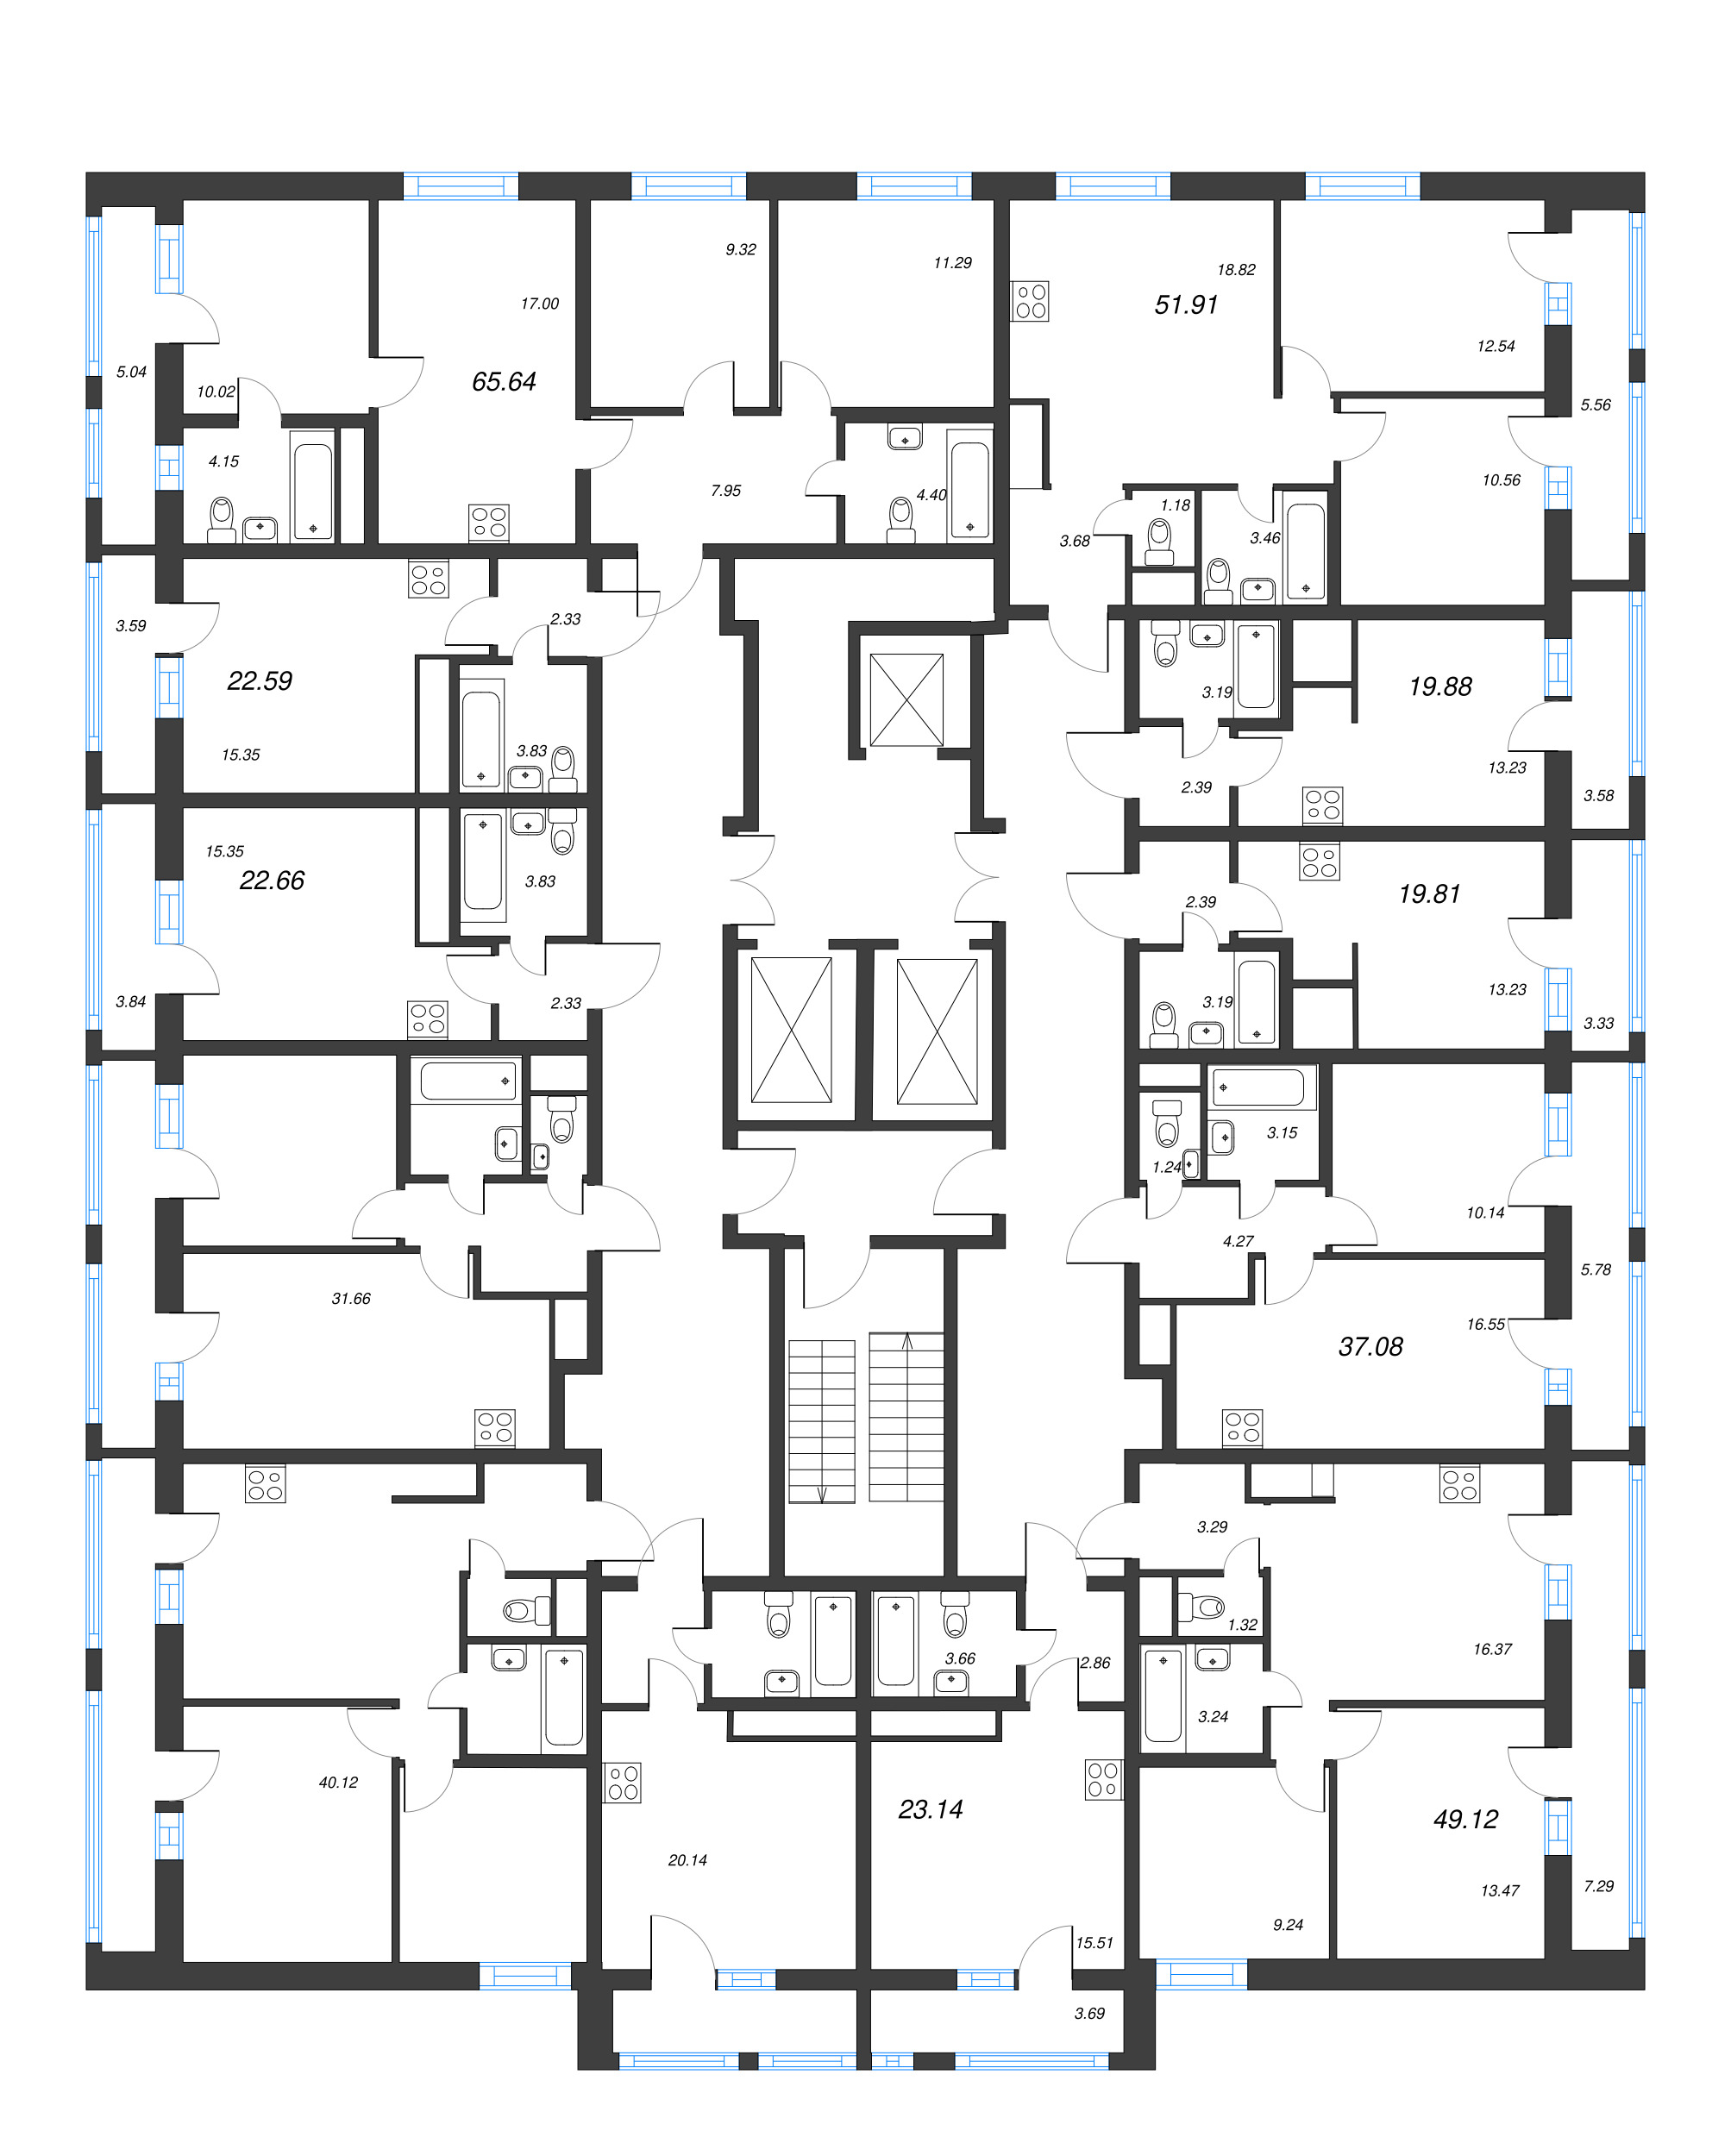 Квартира-студия, 19.81 м² в ЖК "Старлайт" - планировка этажа